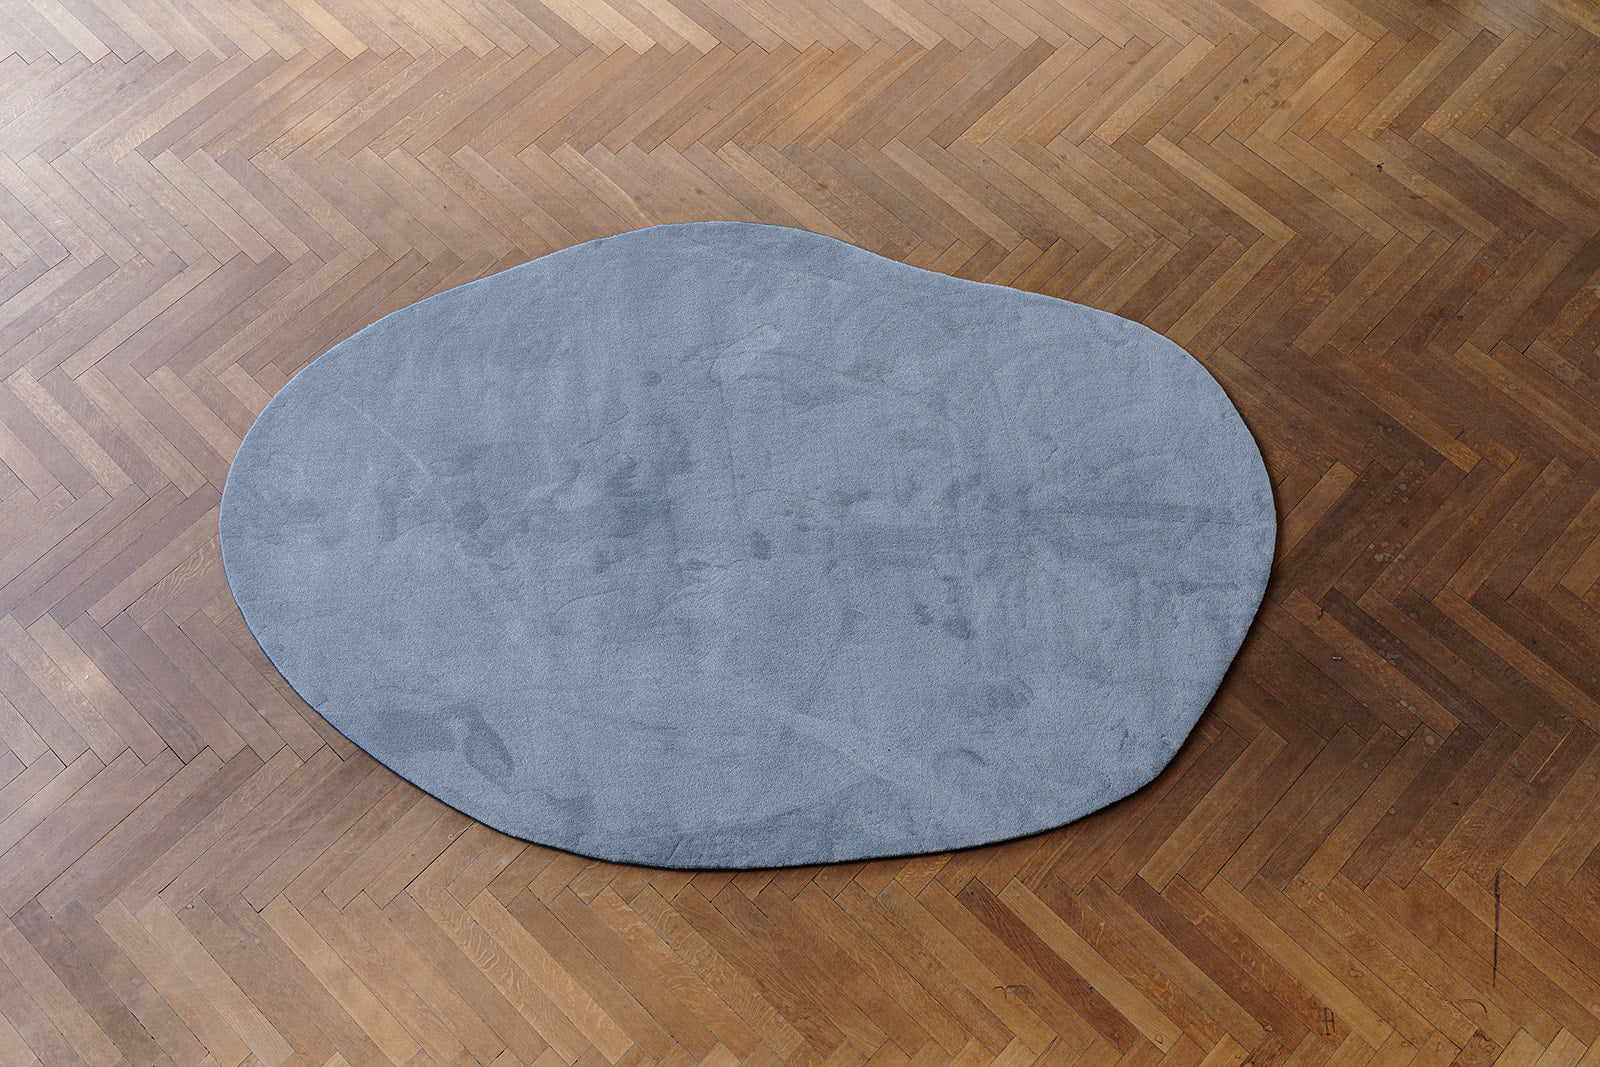 Bovenaanzicht pebble grijskleurig (stone) ecologisch tapijt op maat, op parket vloer.